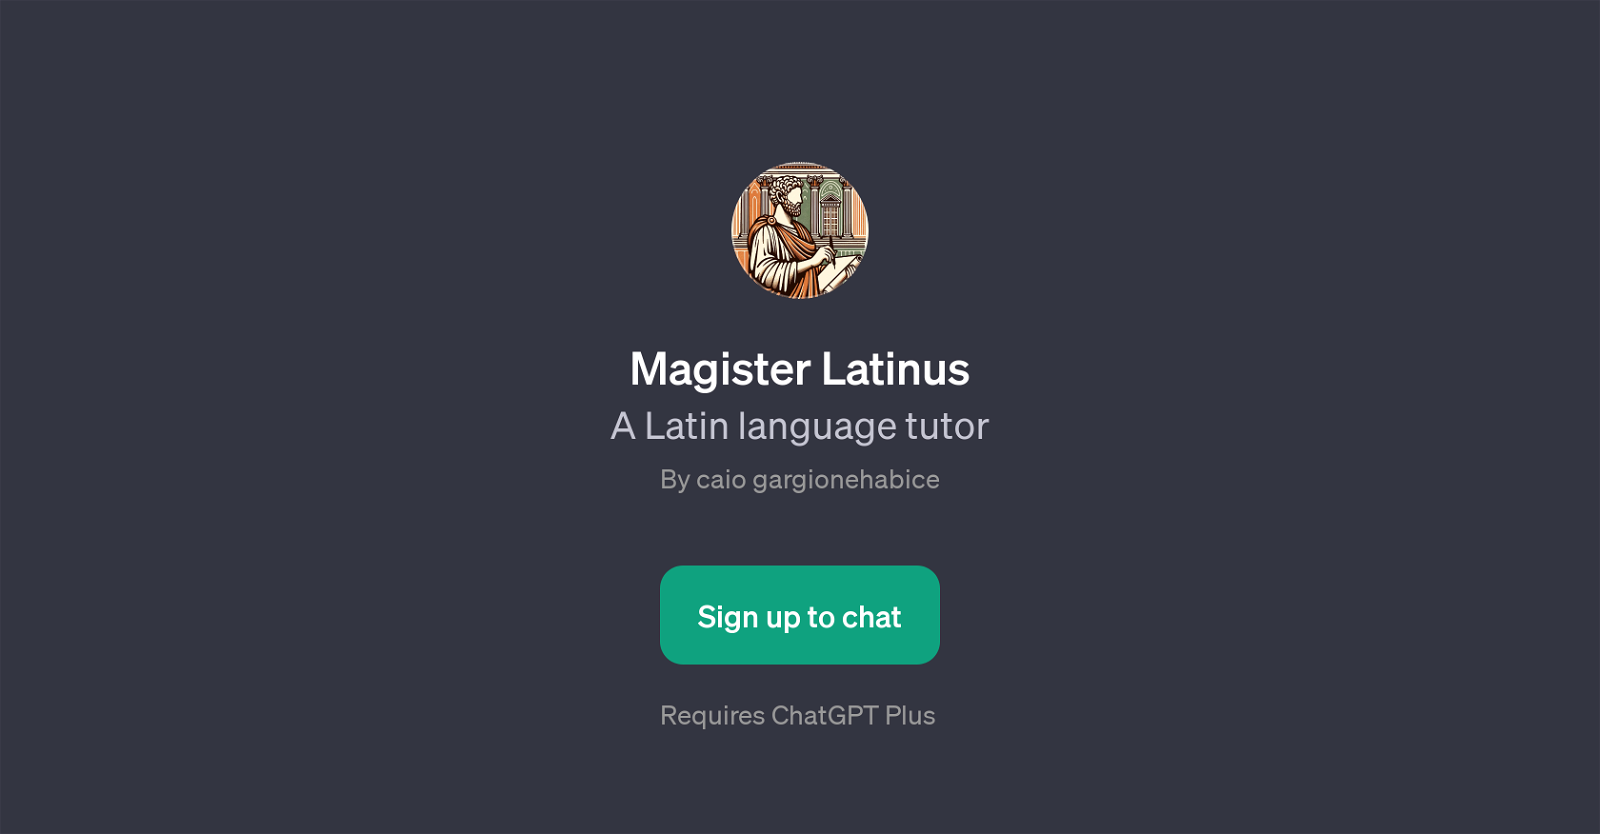 Magister Latinus website